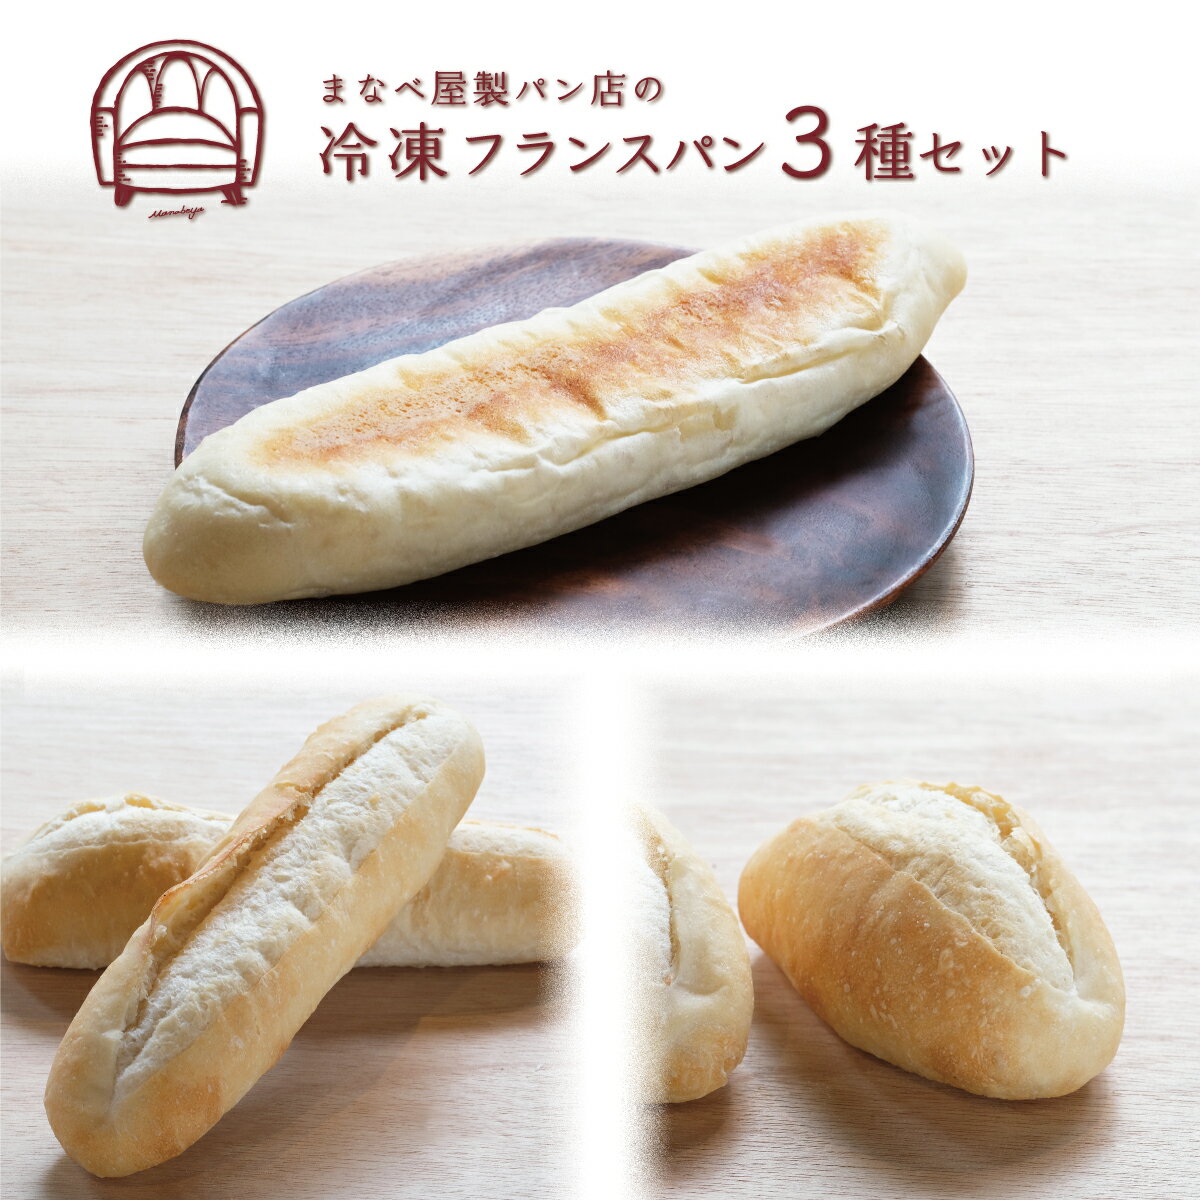 【発酵不要の冷凍パン】フランスパンお試し3種セット